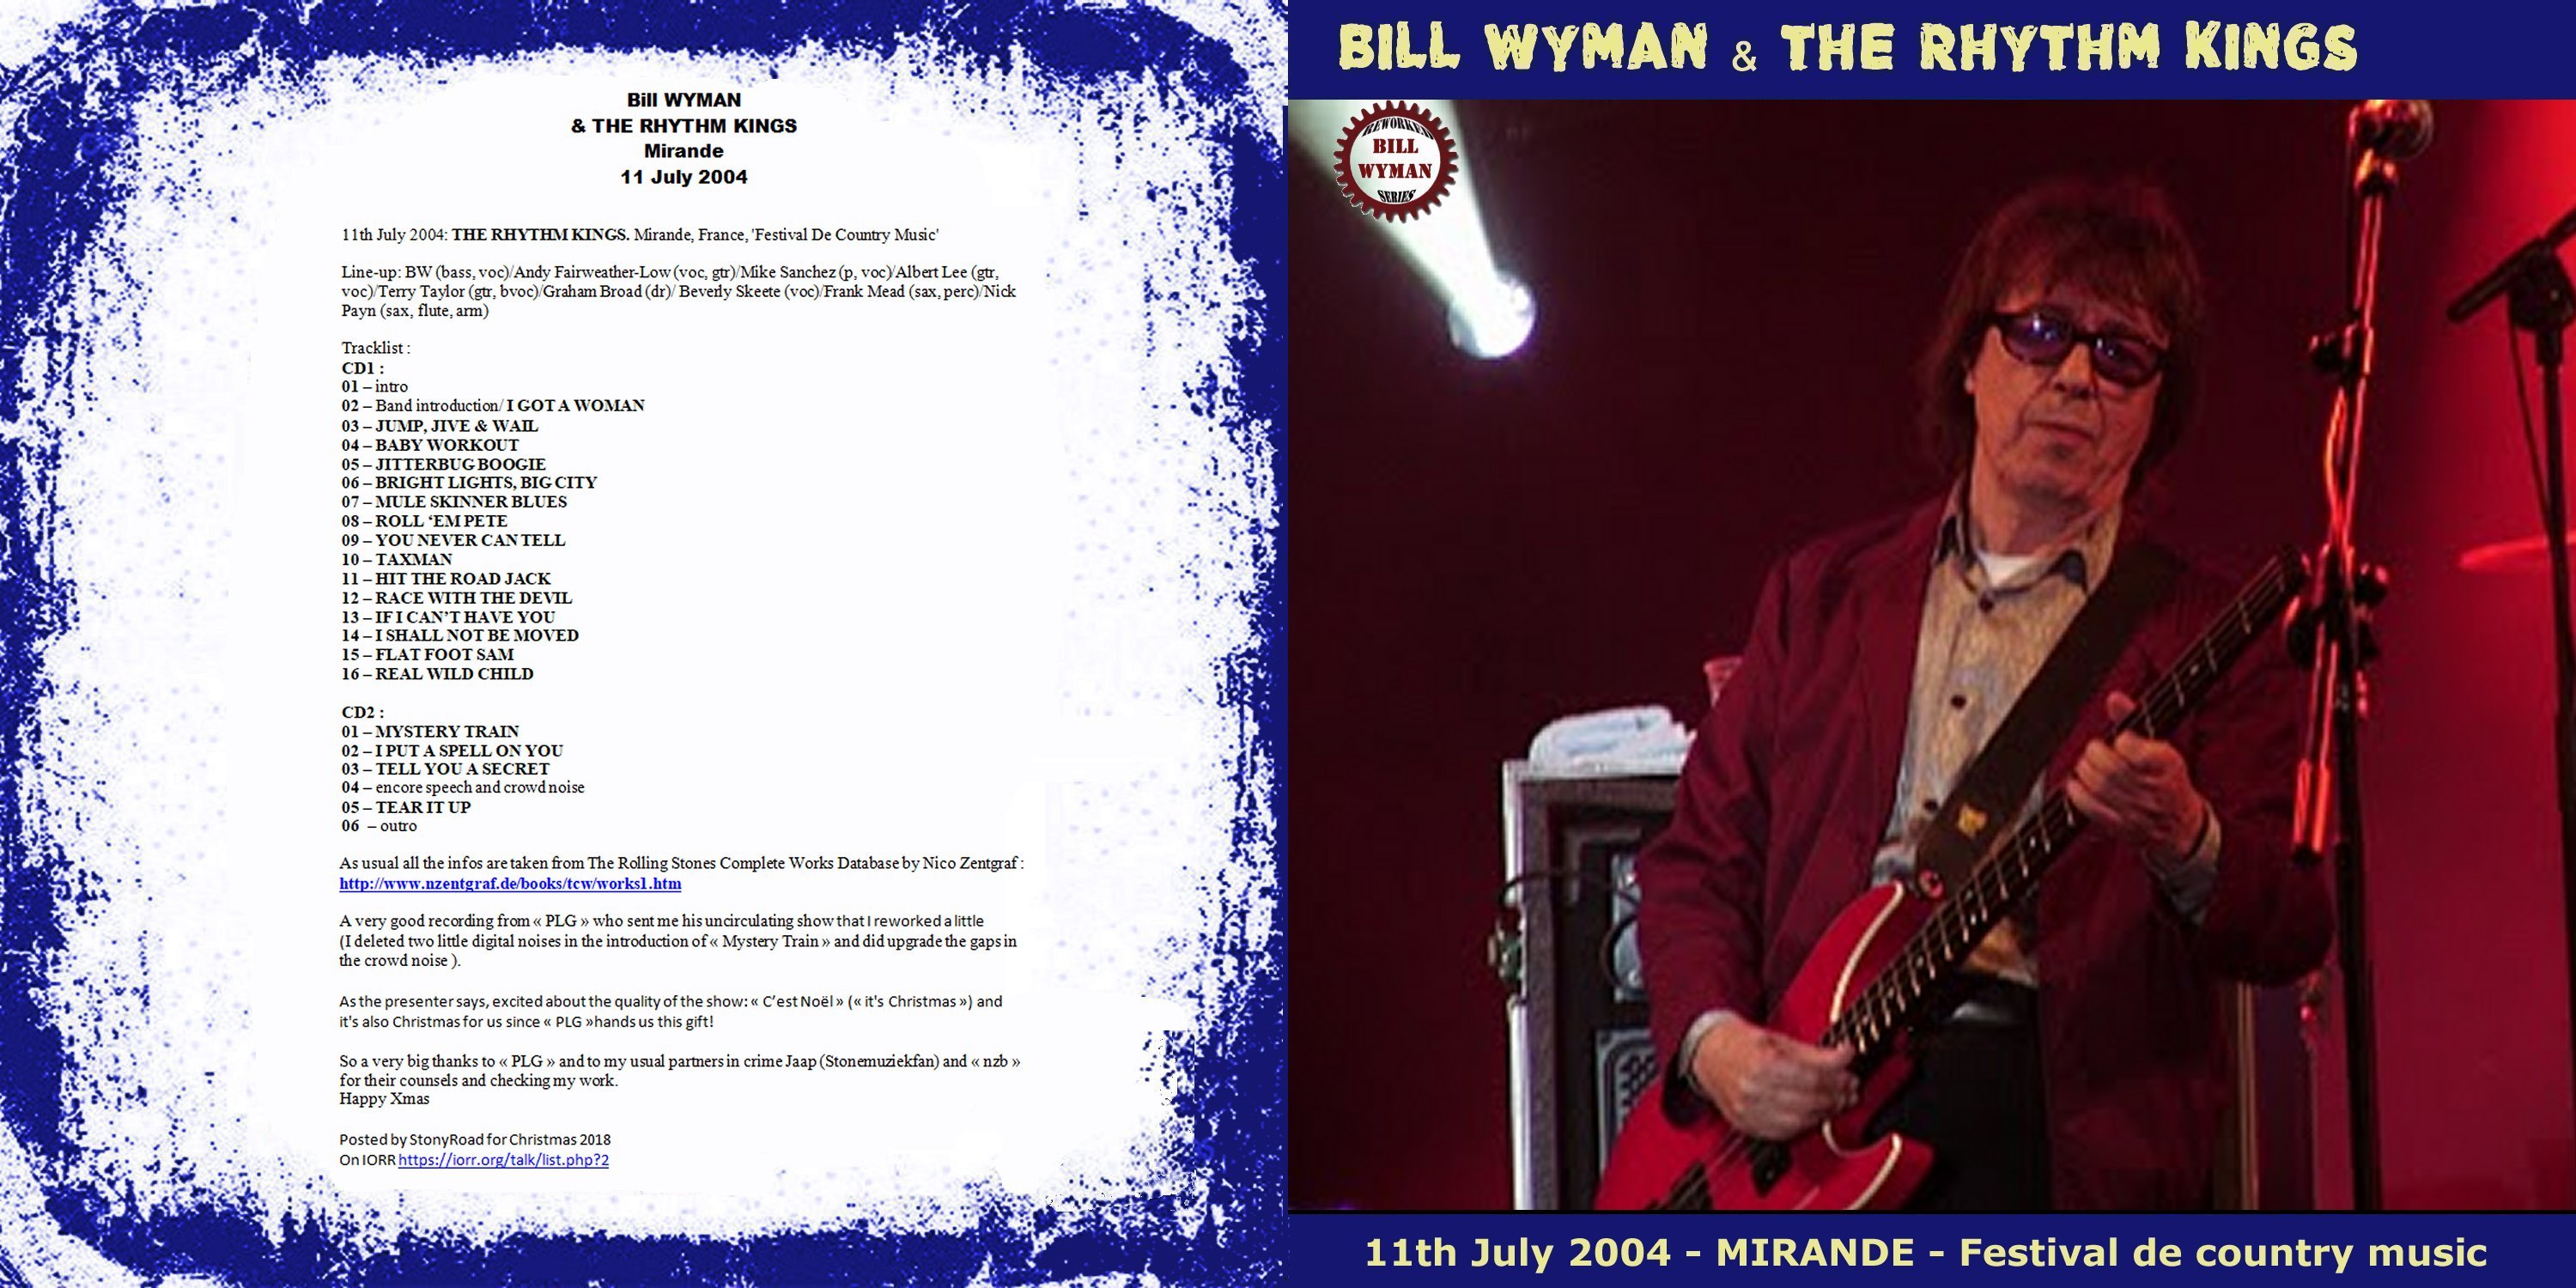 BillWymanAndTheRhythmKings2004-07-11FestivalDeCountryMusicMirandeFrance (1).jpg